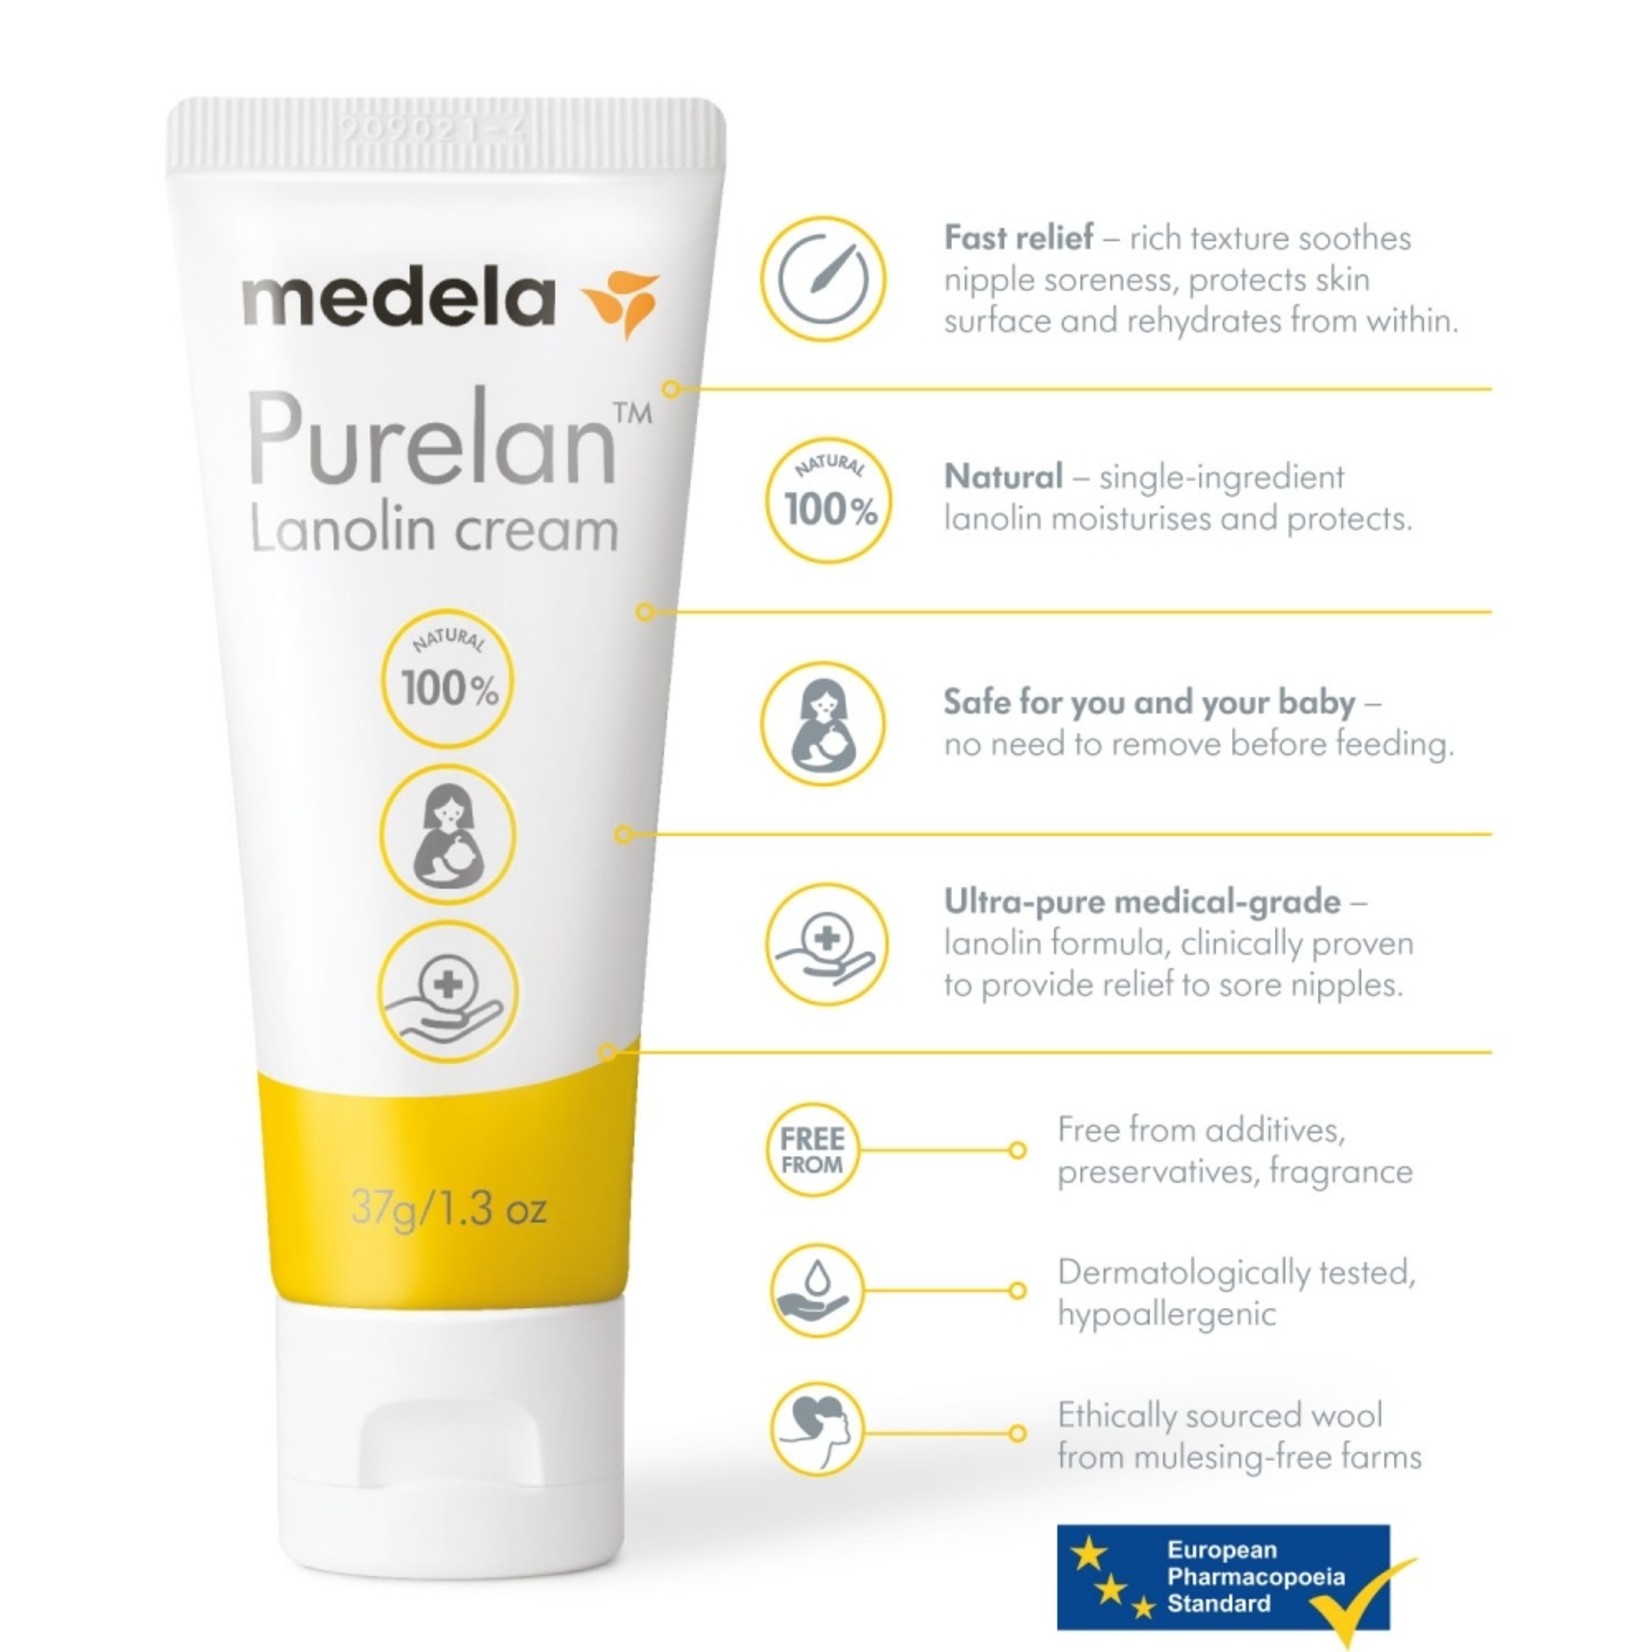 Medela Purelan Lanolin cream 37g